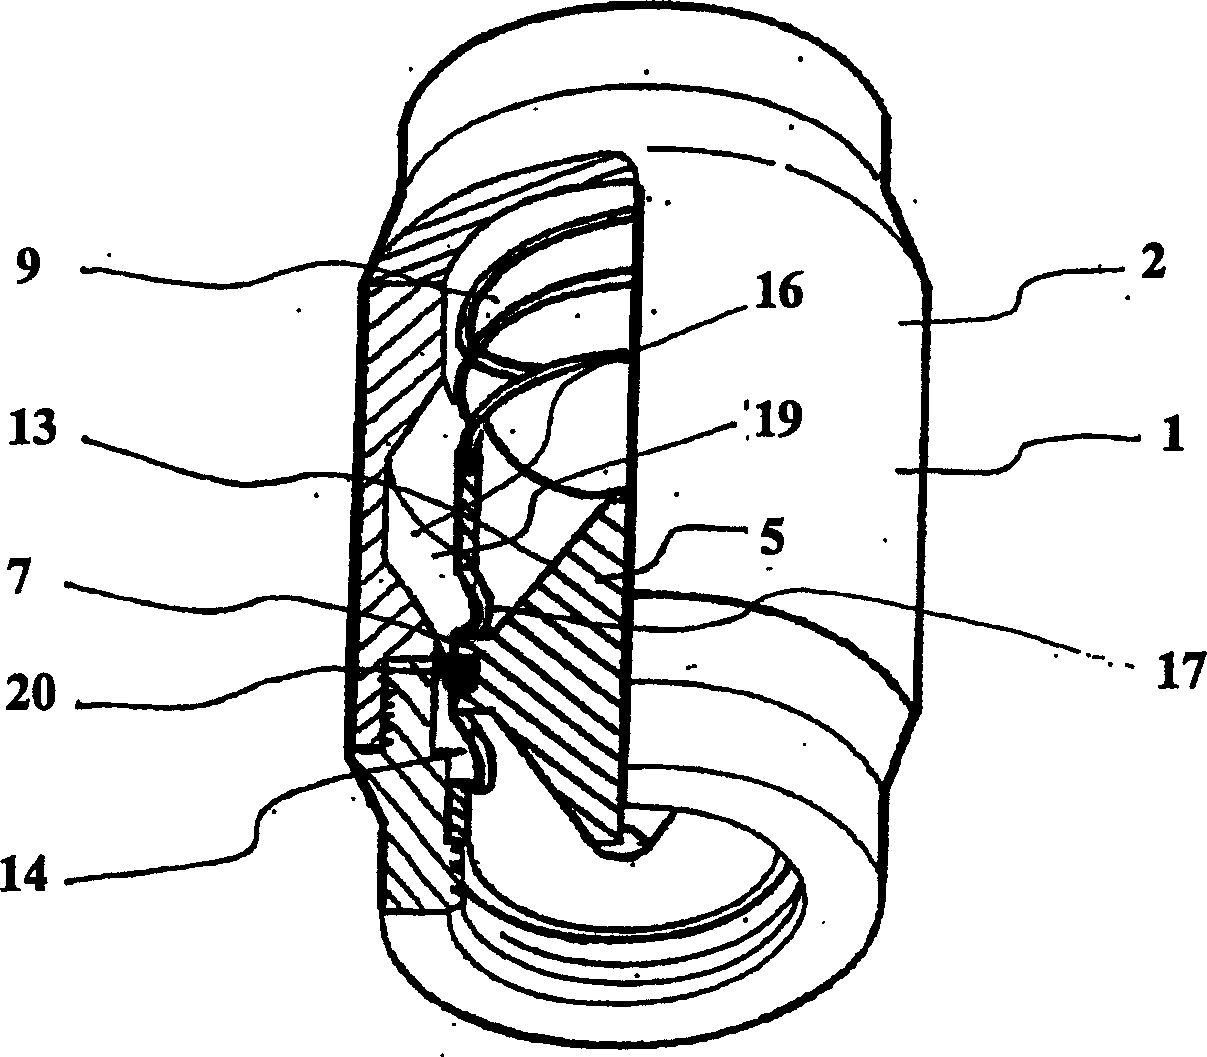 A check valve